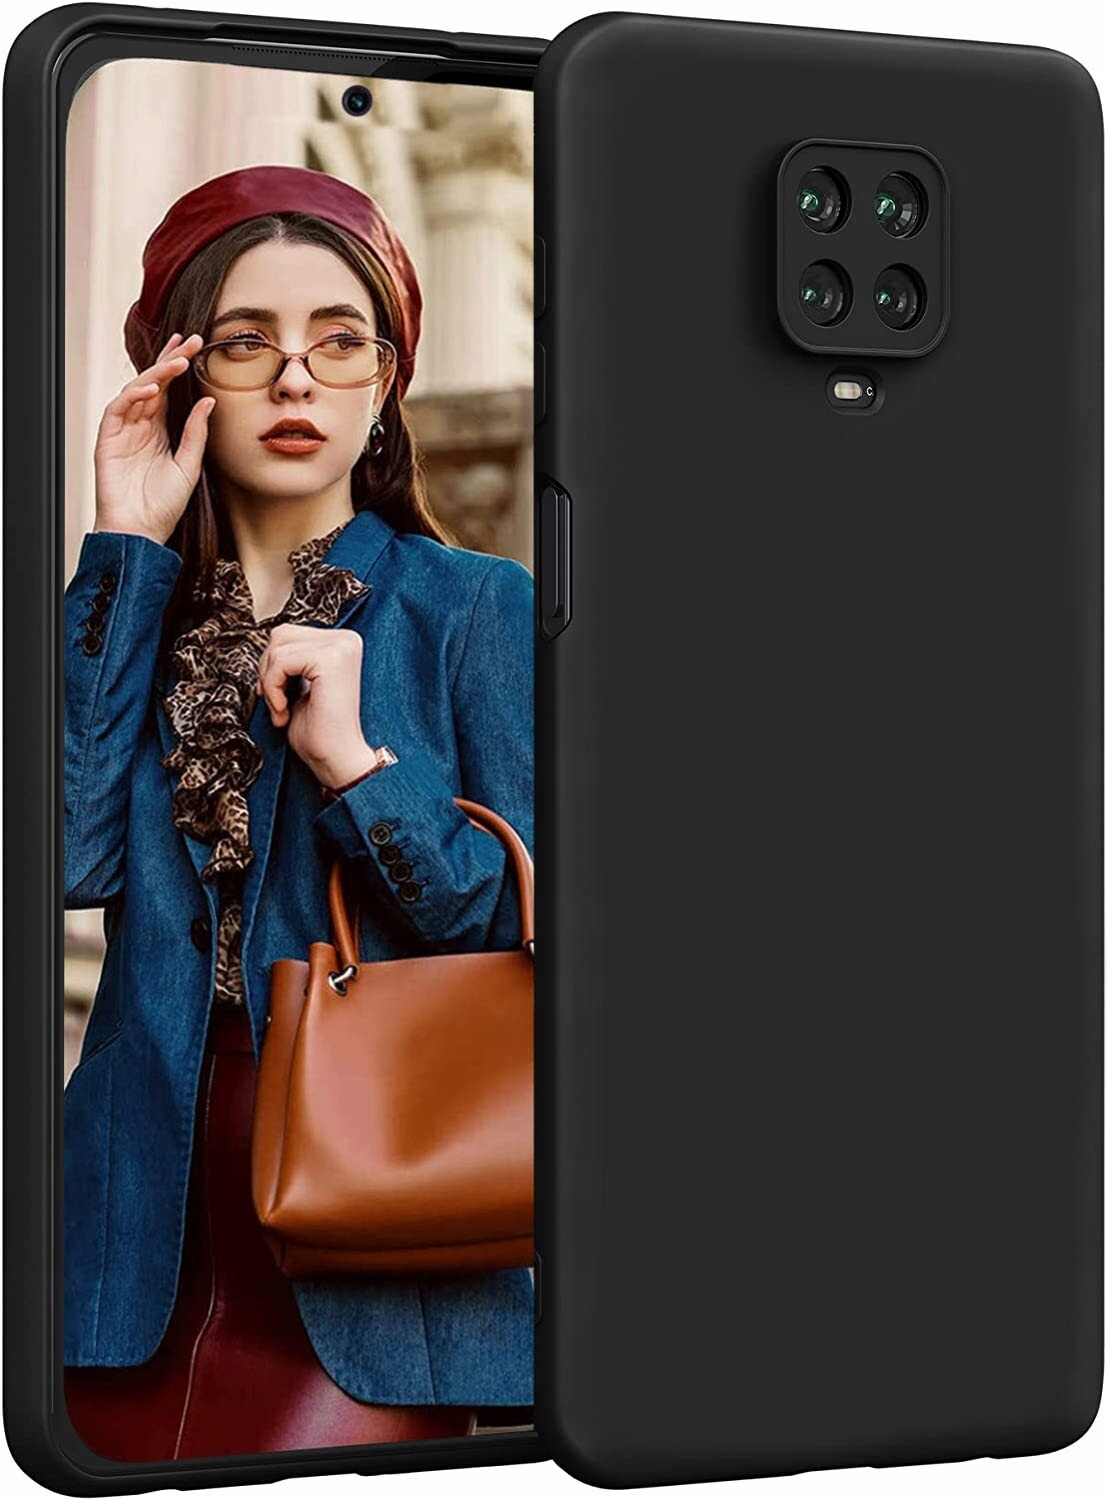 Silikon Hülle mit Kameraschutz passend für Xiaomi Redmi Note 8T Handy Back Cover Schutz Case Flexibel